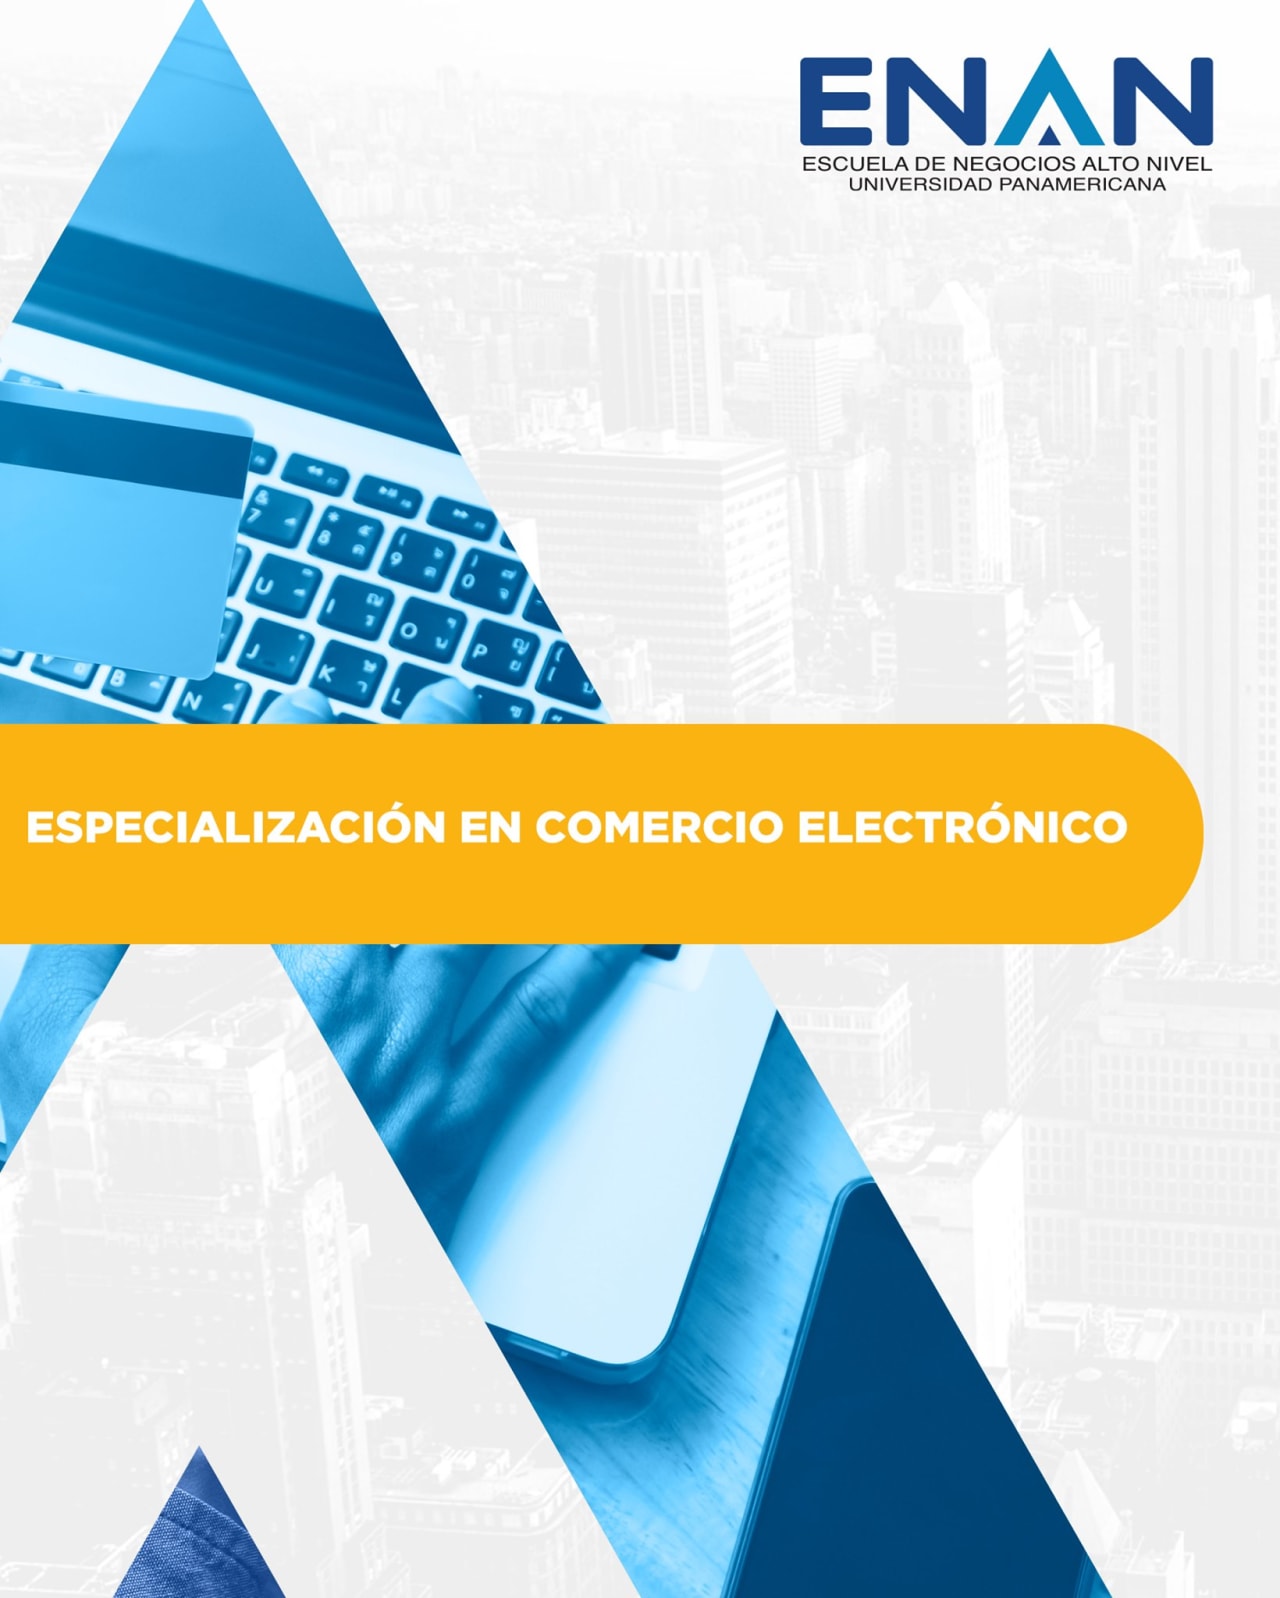 Escuela de Negocios Alto Nivel - Universidad Panamericana de Guatemala Electronic Commerce Specialization